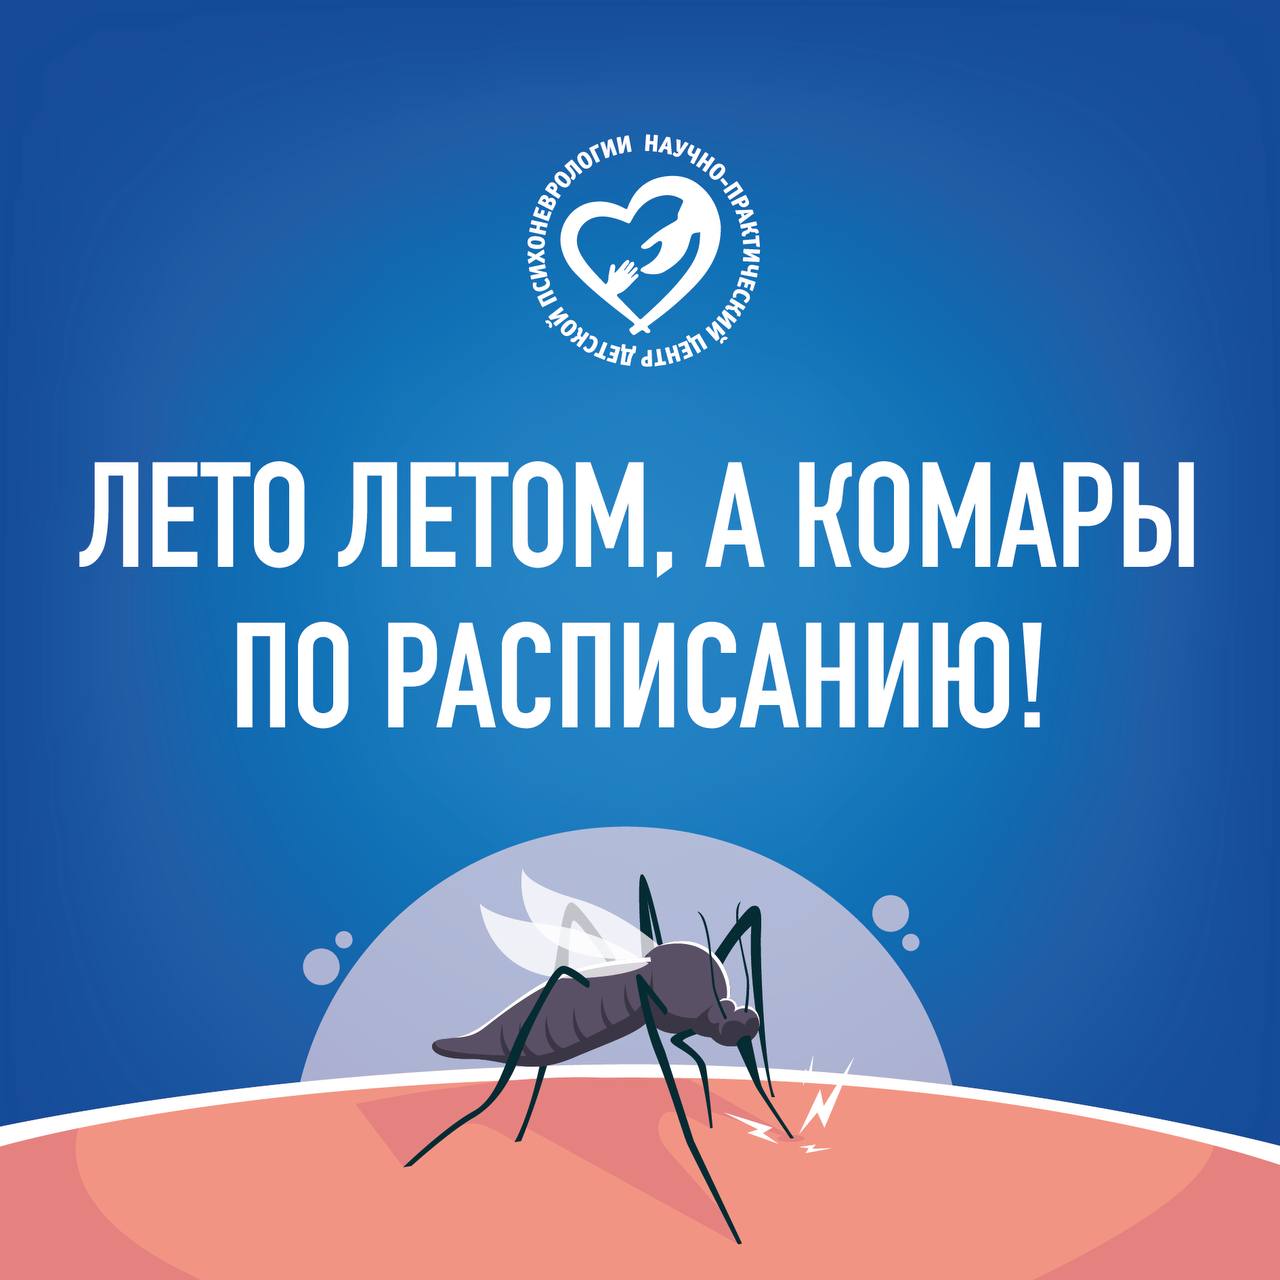 Как справиться с комарами летом?